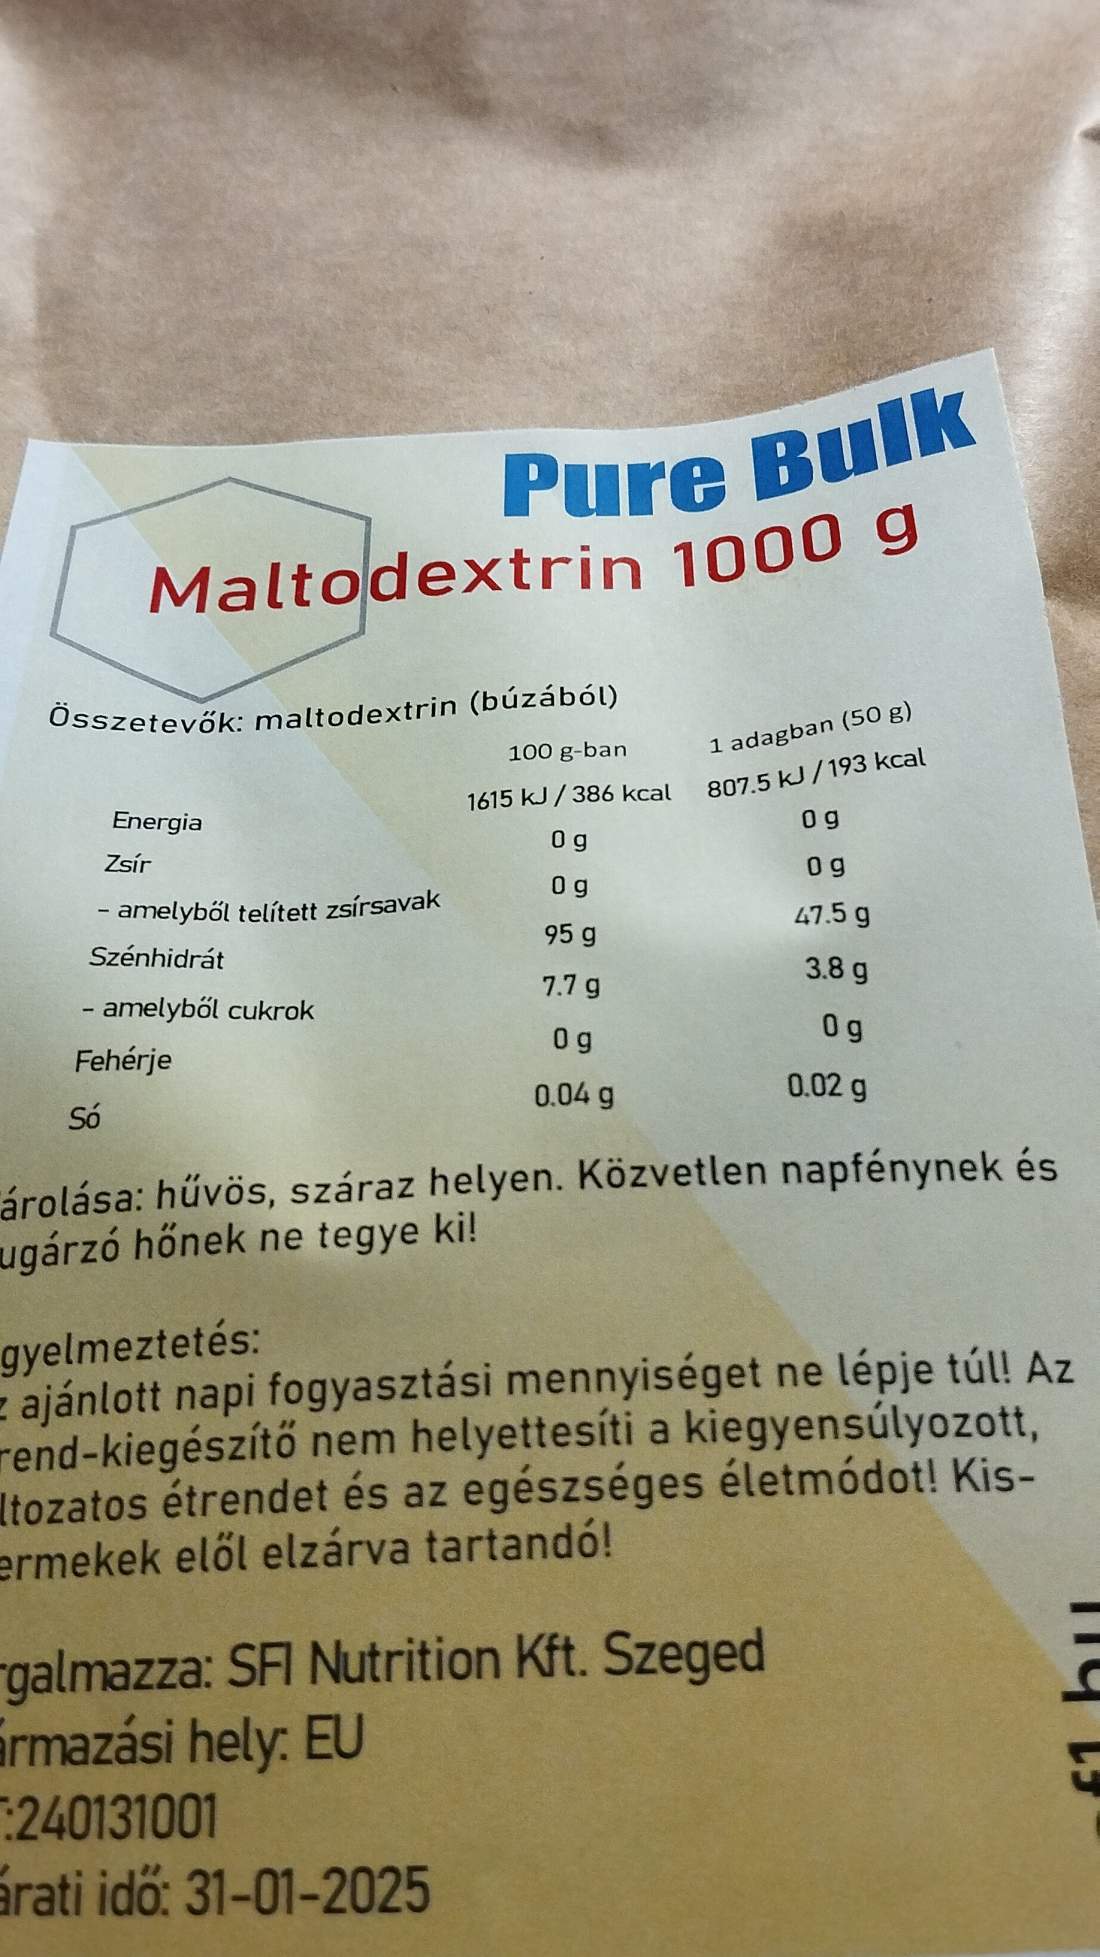 Pure Bulk maltodextrin 1000 g